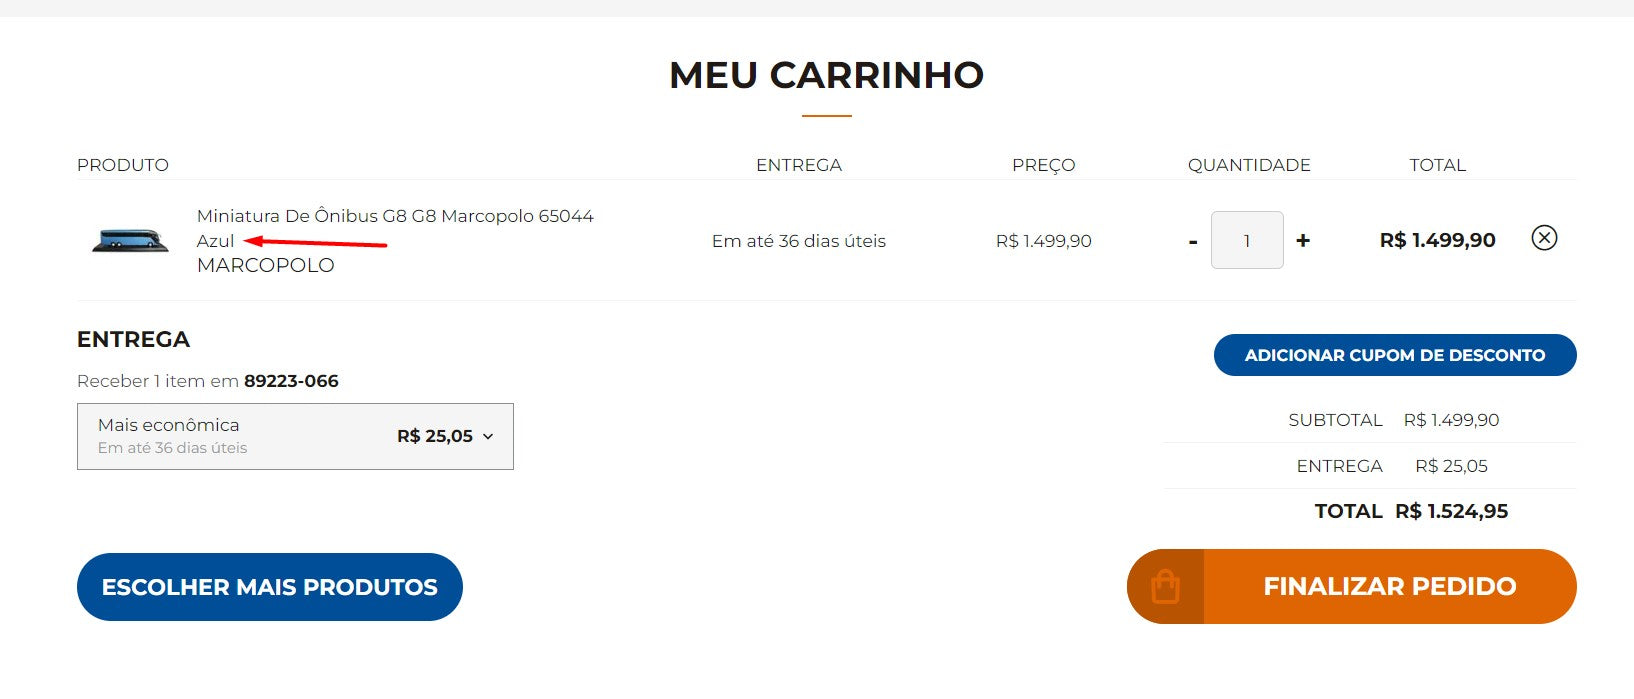 Personal Shopper | Buy from Brazil - Miniatura De Ônibus G8 G8 Marcopolo 65044 - 1 unit(DDP)- MKPBR - Brazilian Brands Worldwide